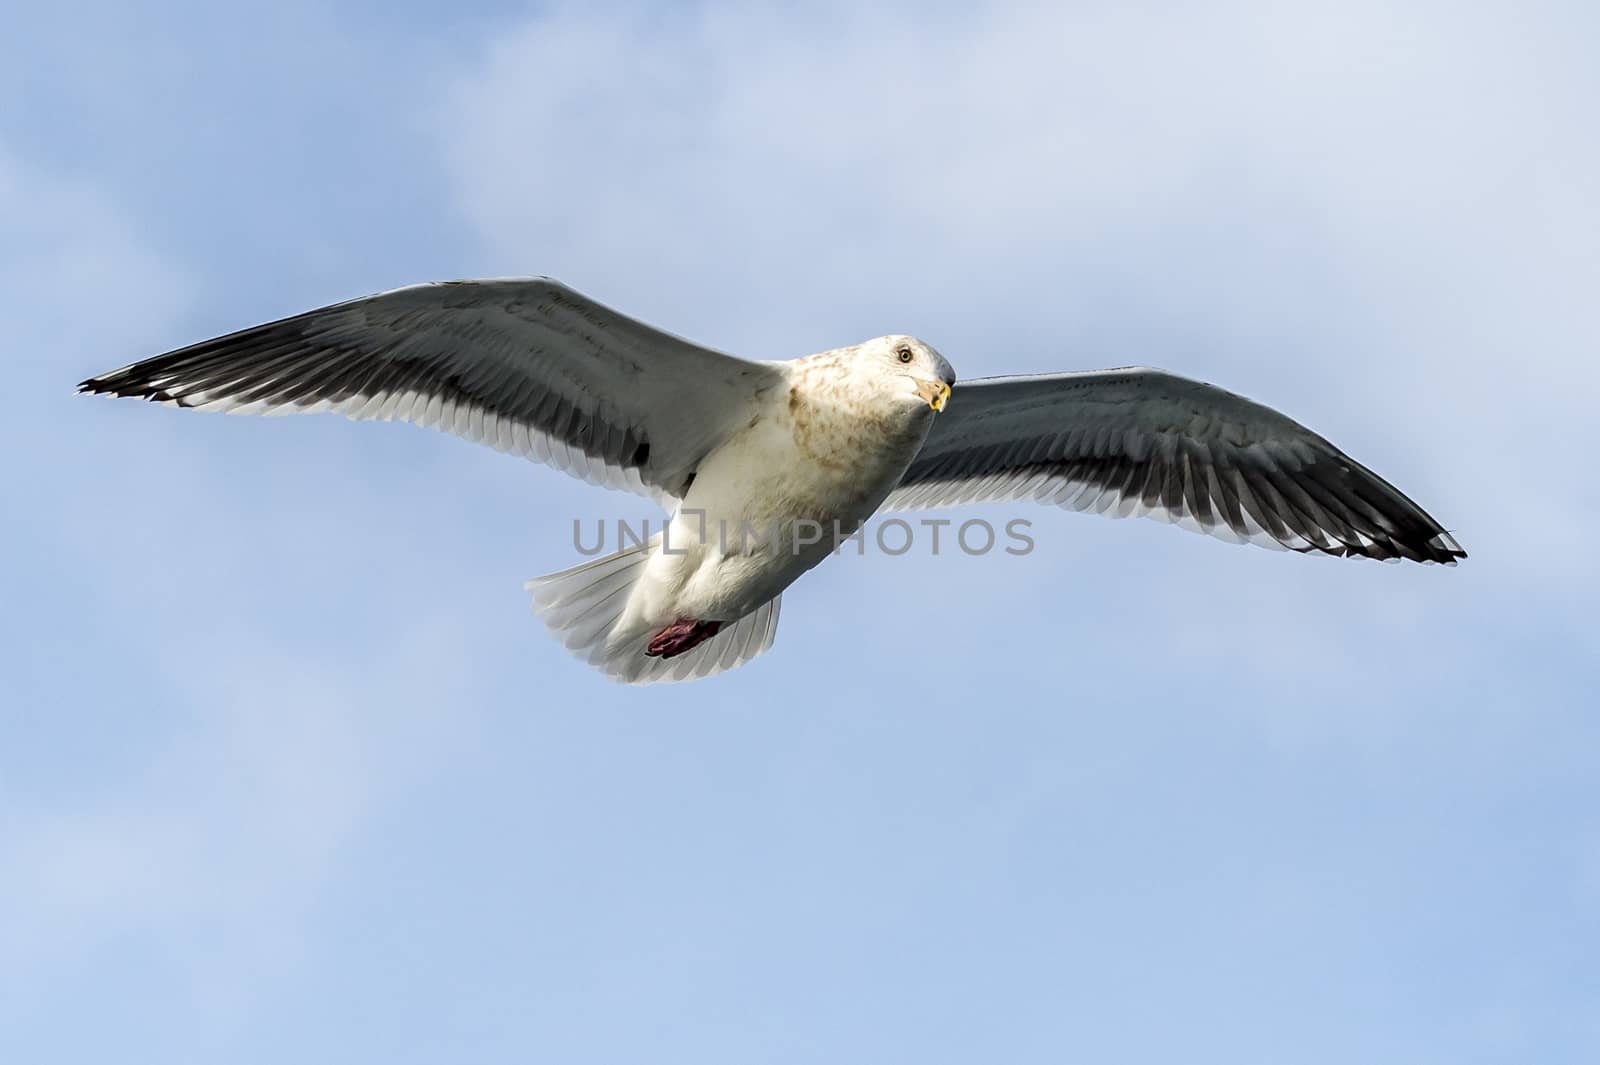 The Flying Predatory Seagulls near Rausu in Shiretoko, Hokkaido of Japan.